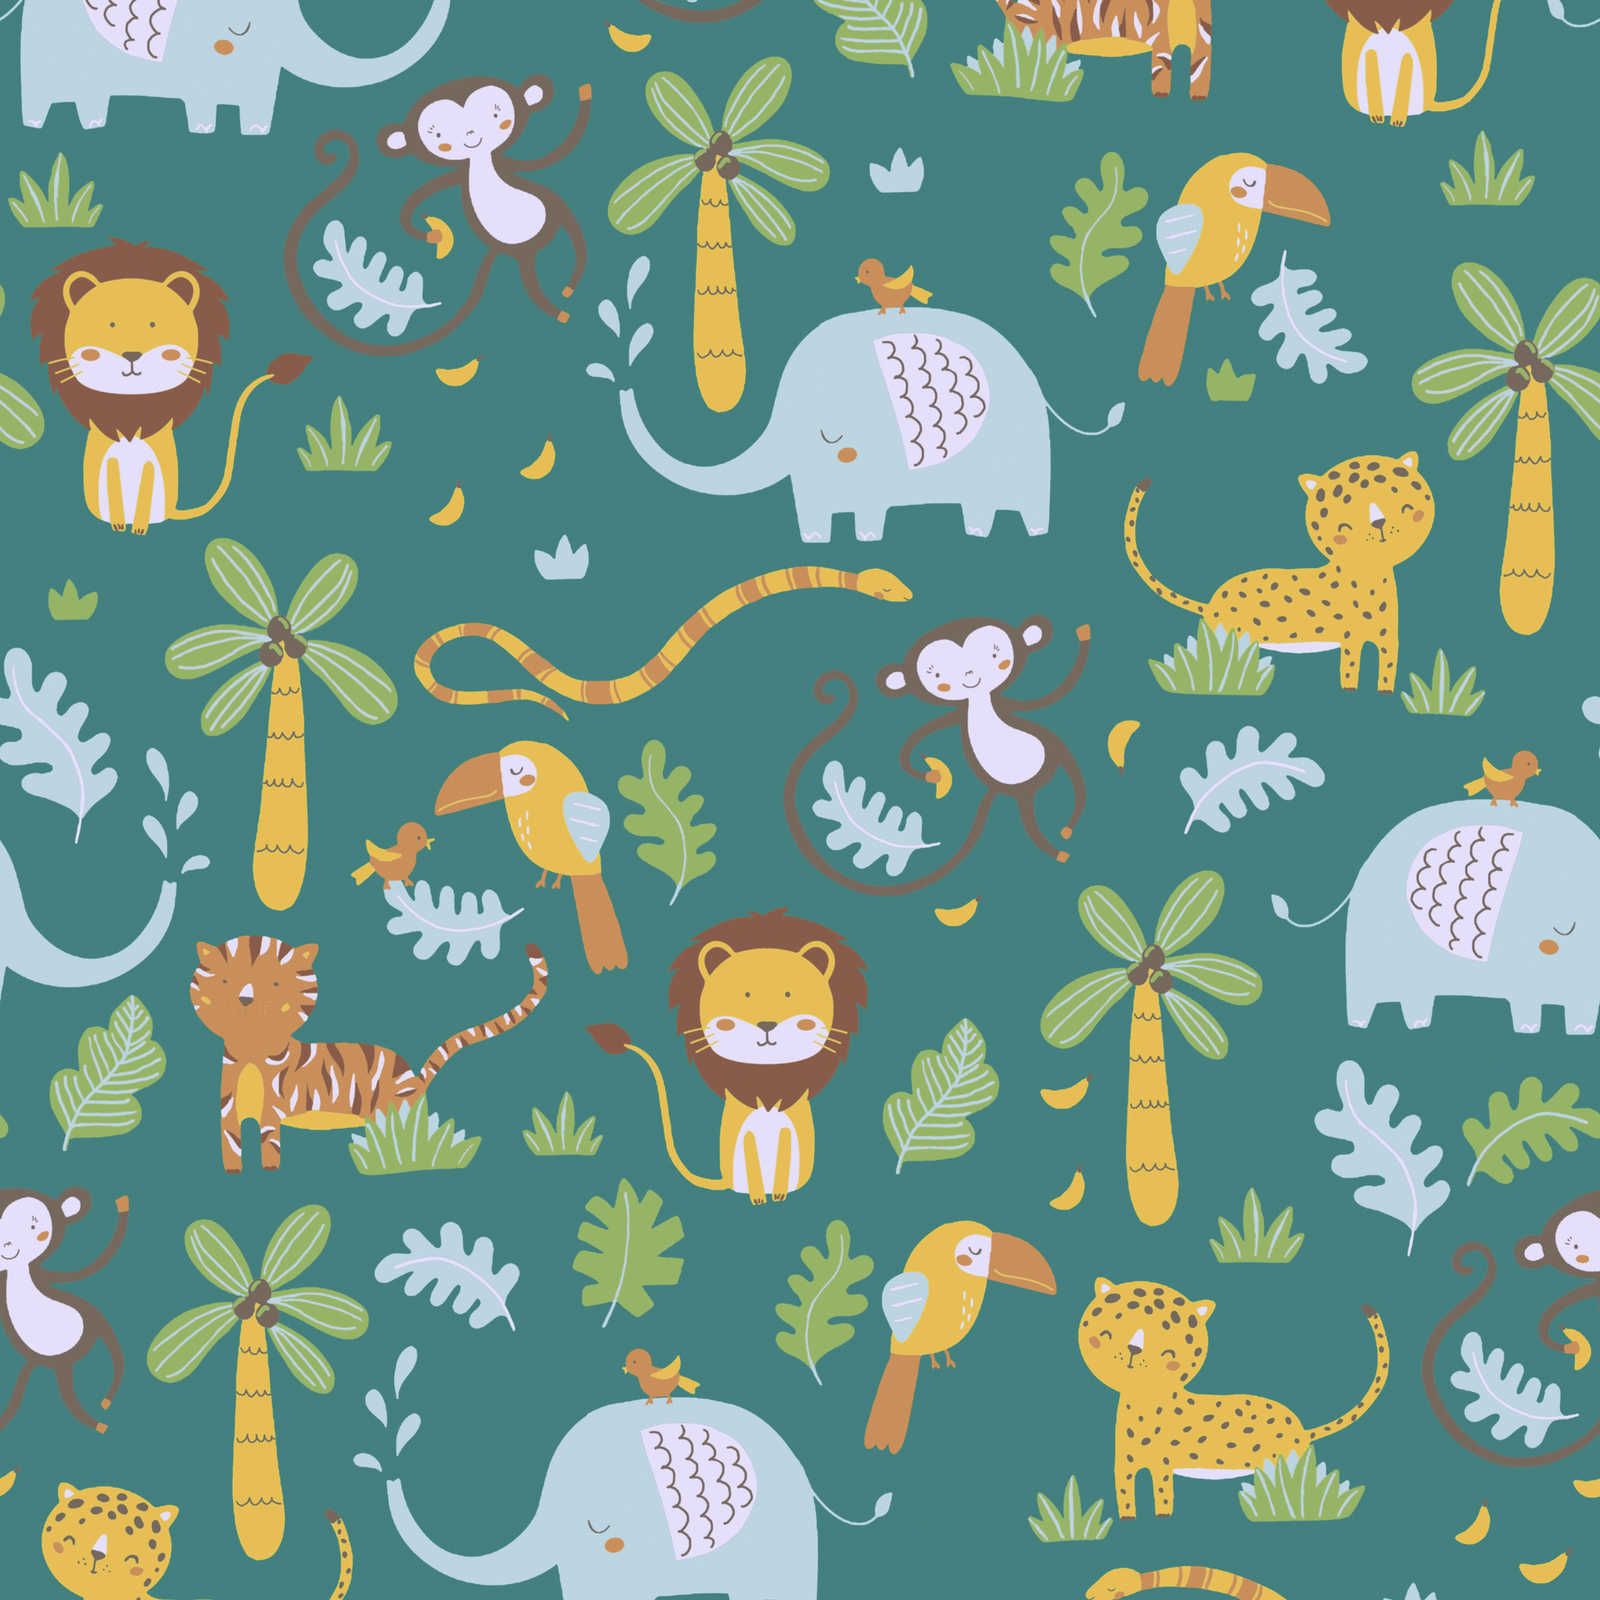 Children wallpaper jungle animals - green, yellow, blue
